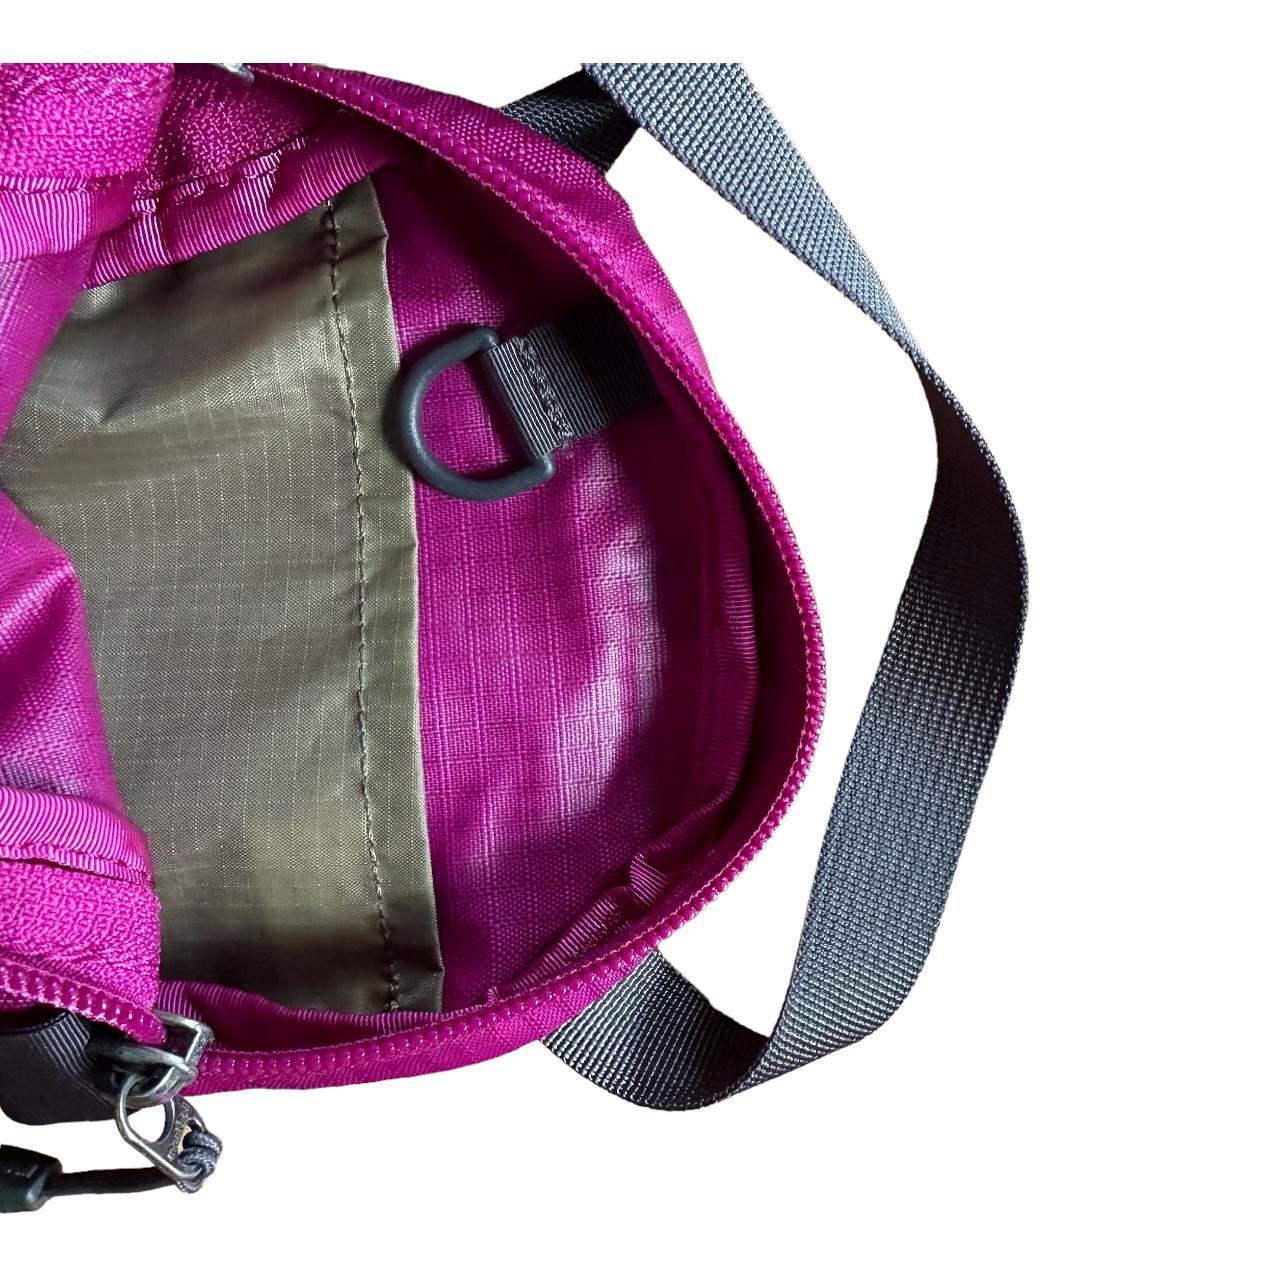 Mont-bell nylon mini shoulder pouch purple - Known Source